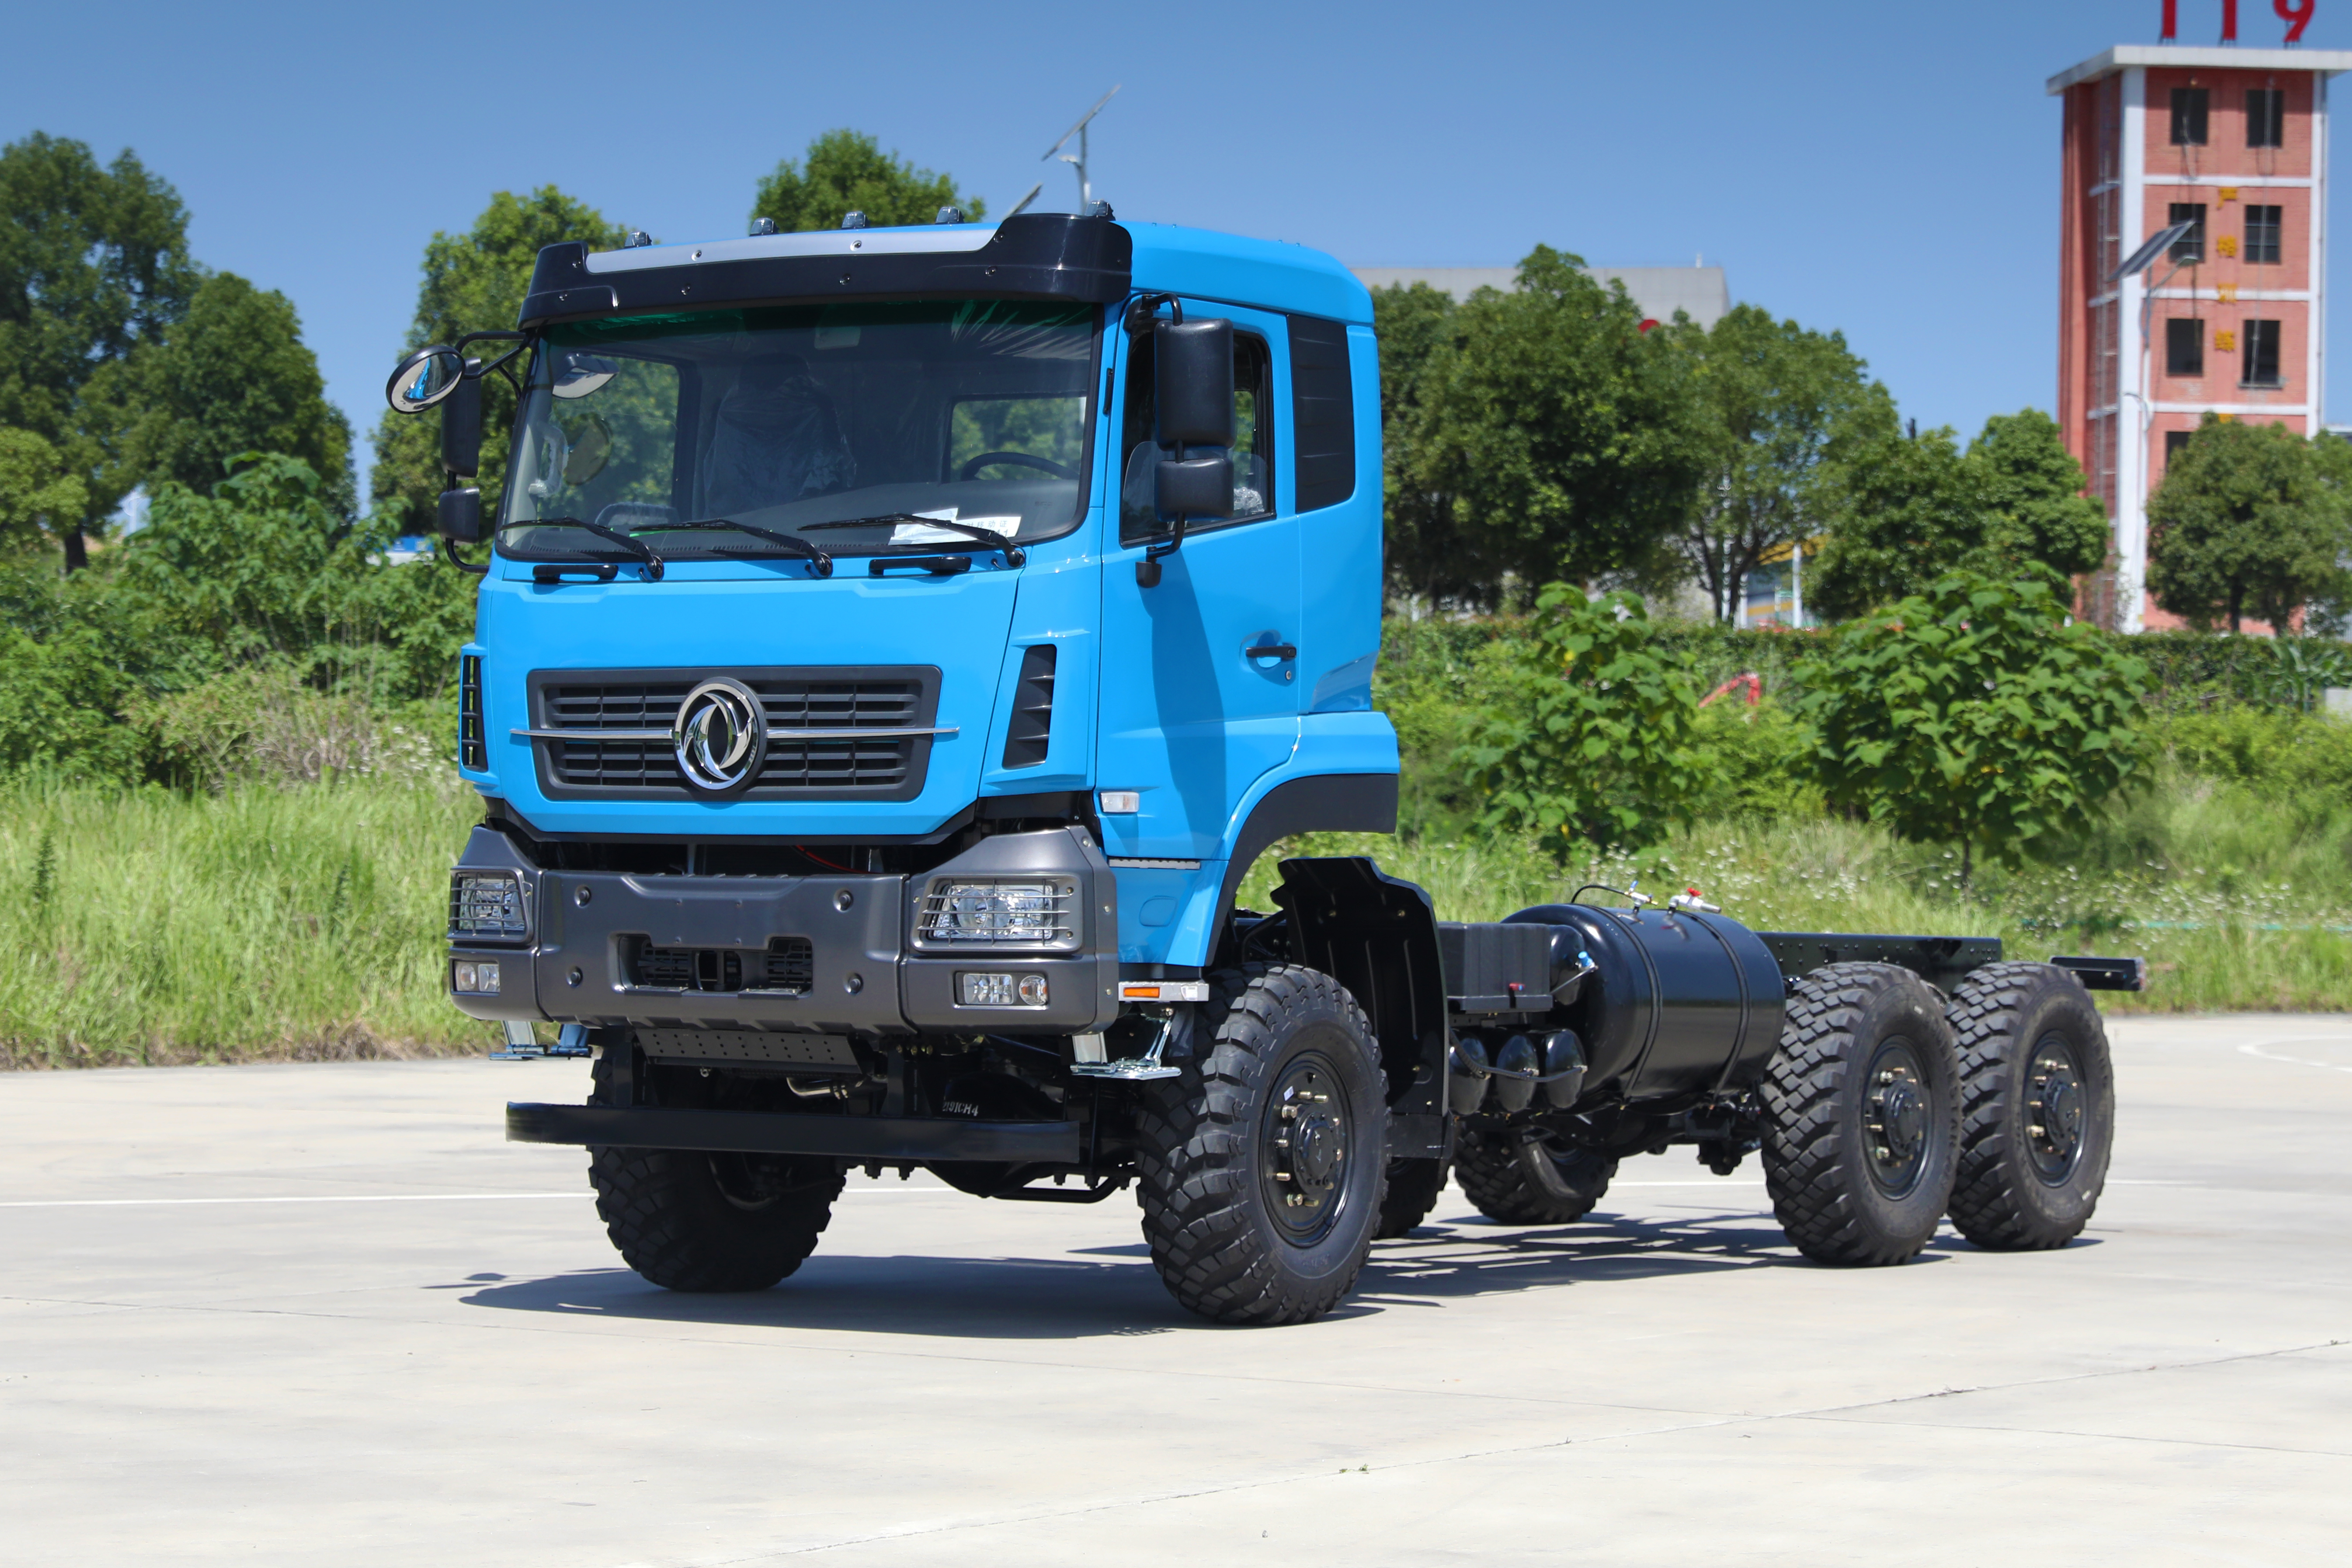 Dongfeng ຂັບ 6 ລໍ້ 15 ໂຕນ ລົດບັນທຸກ ຫນັກ 15 ໂຕນ chassis-6 * 6 ກະດານກໍາແພງສູງ cargo box ລົດບັນທຸກ off-road chassis-340hp ສົ່ງອອກ chassis ລົດຂົນສົ່ງພິເສດ